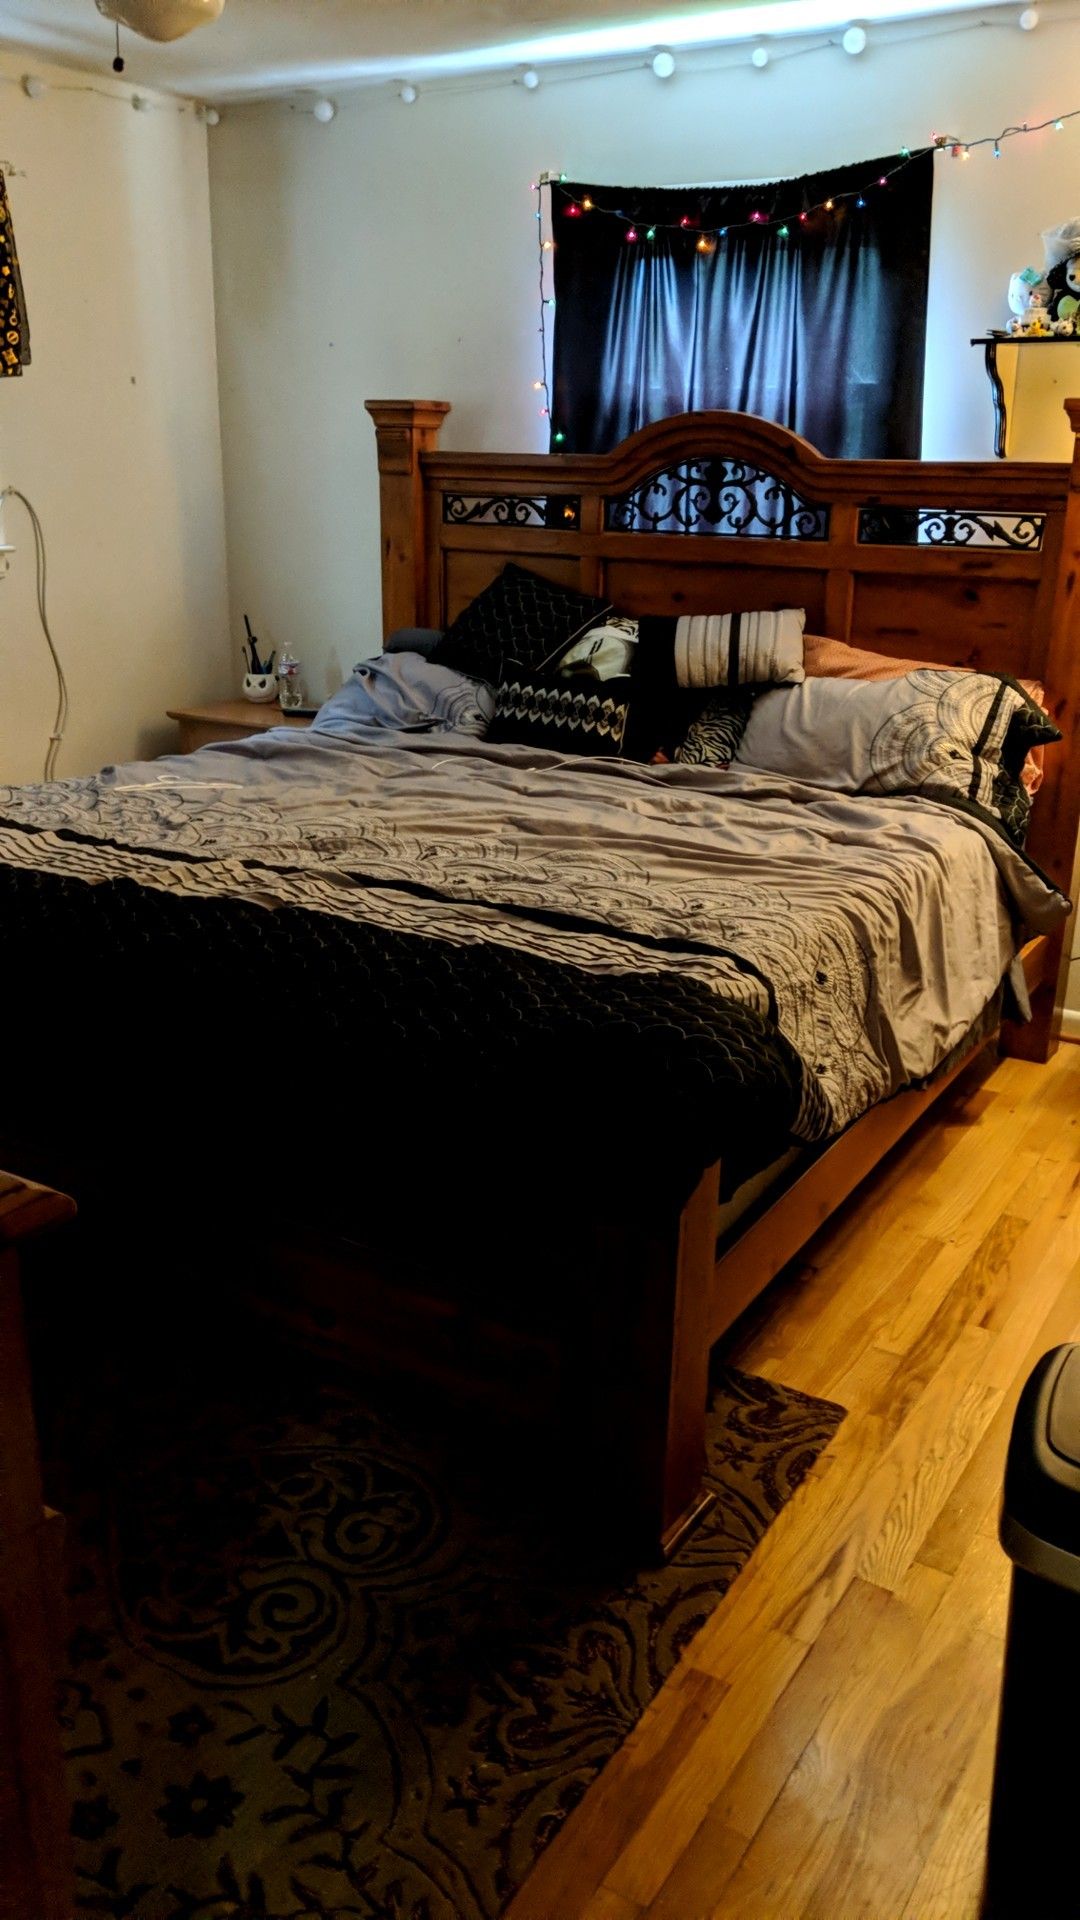 King size bed frame / bedroom set